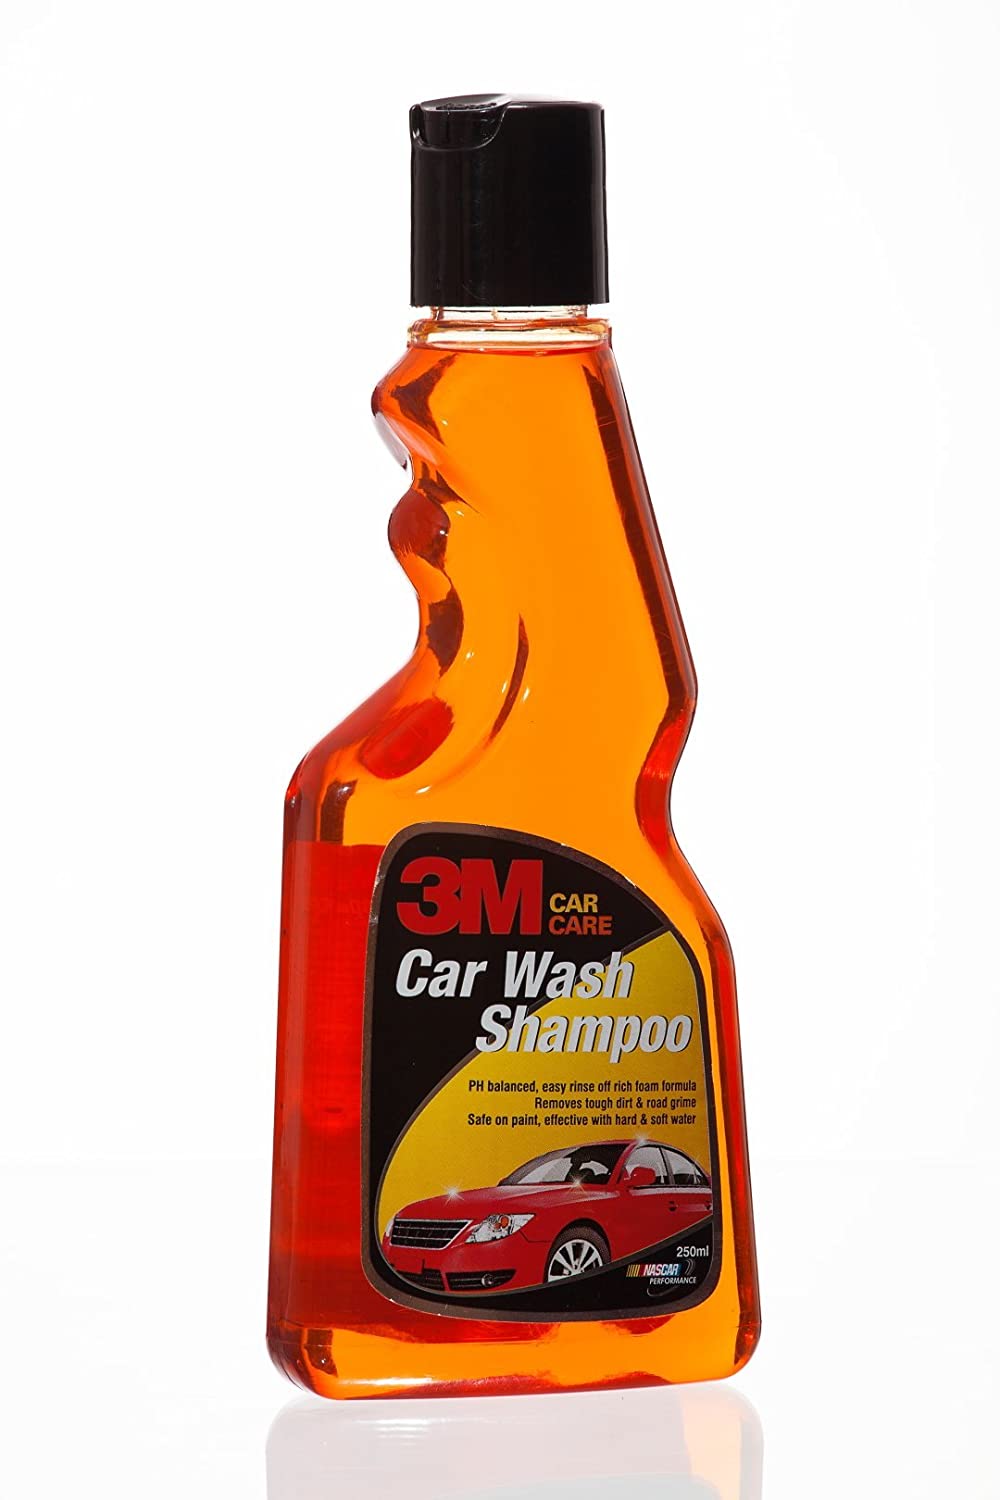 3M Car Care Car Wash Shampoo